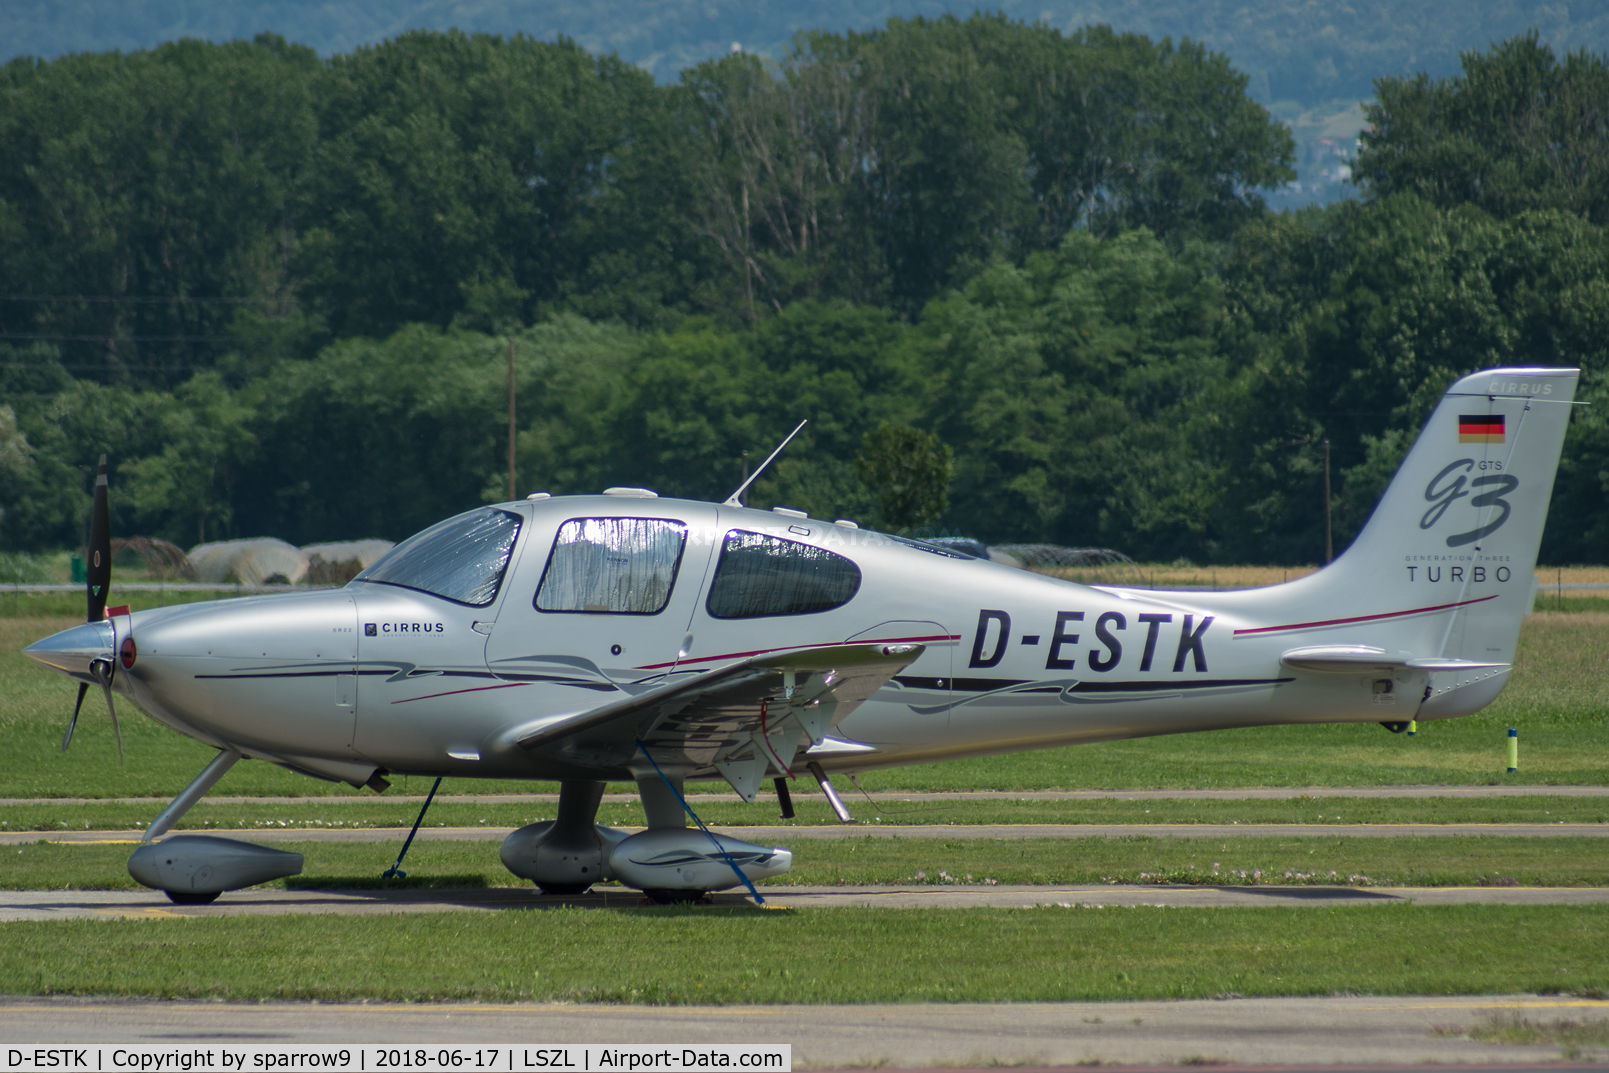 D-ESTK, 2007 Cirrus SR22 G3 GTS Turbo C/N 2688, At Locarno-Magadino airport, civ. side.